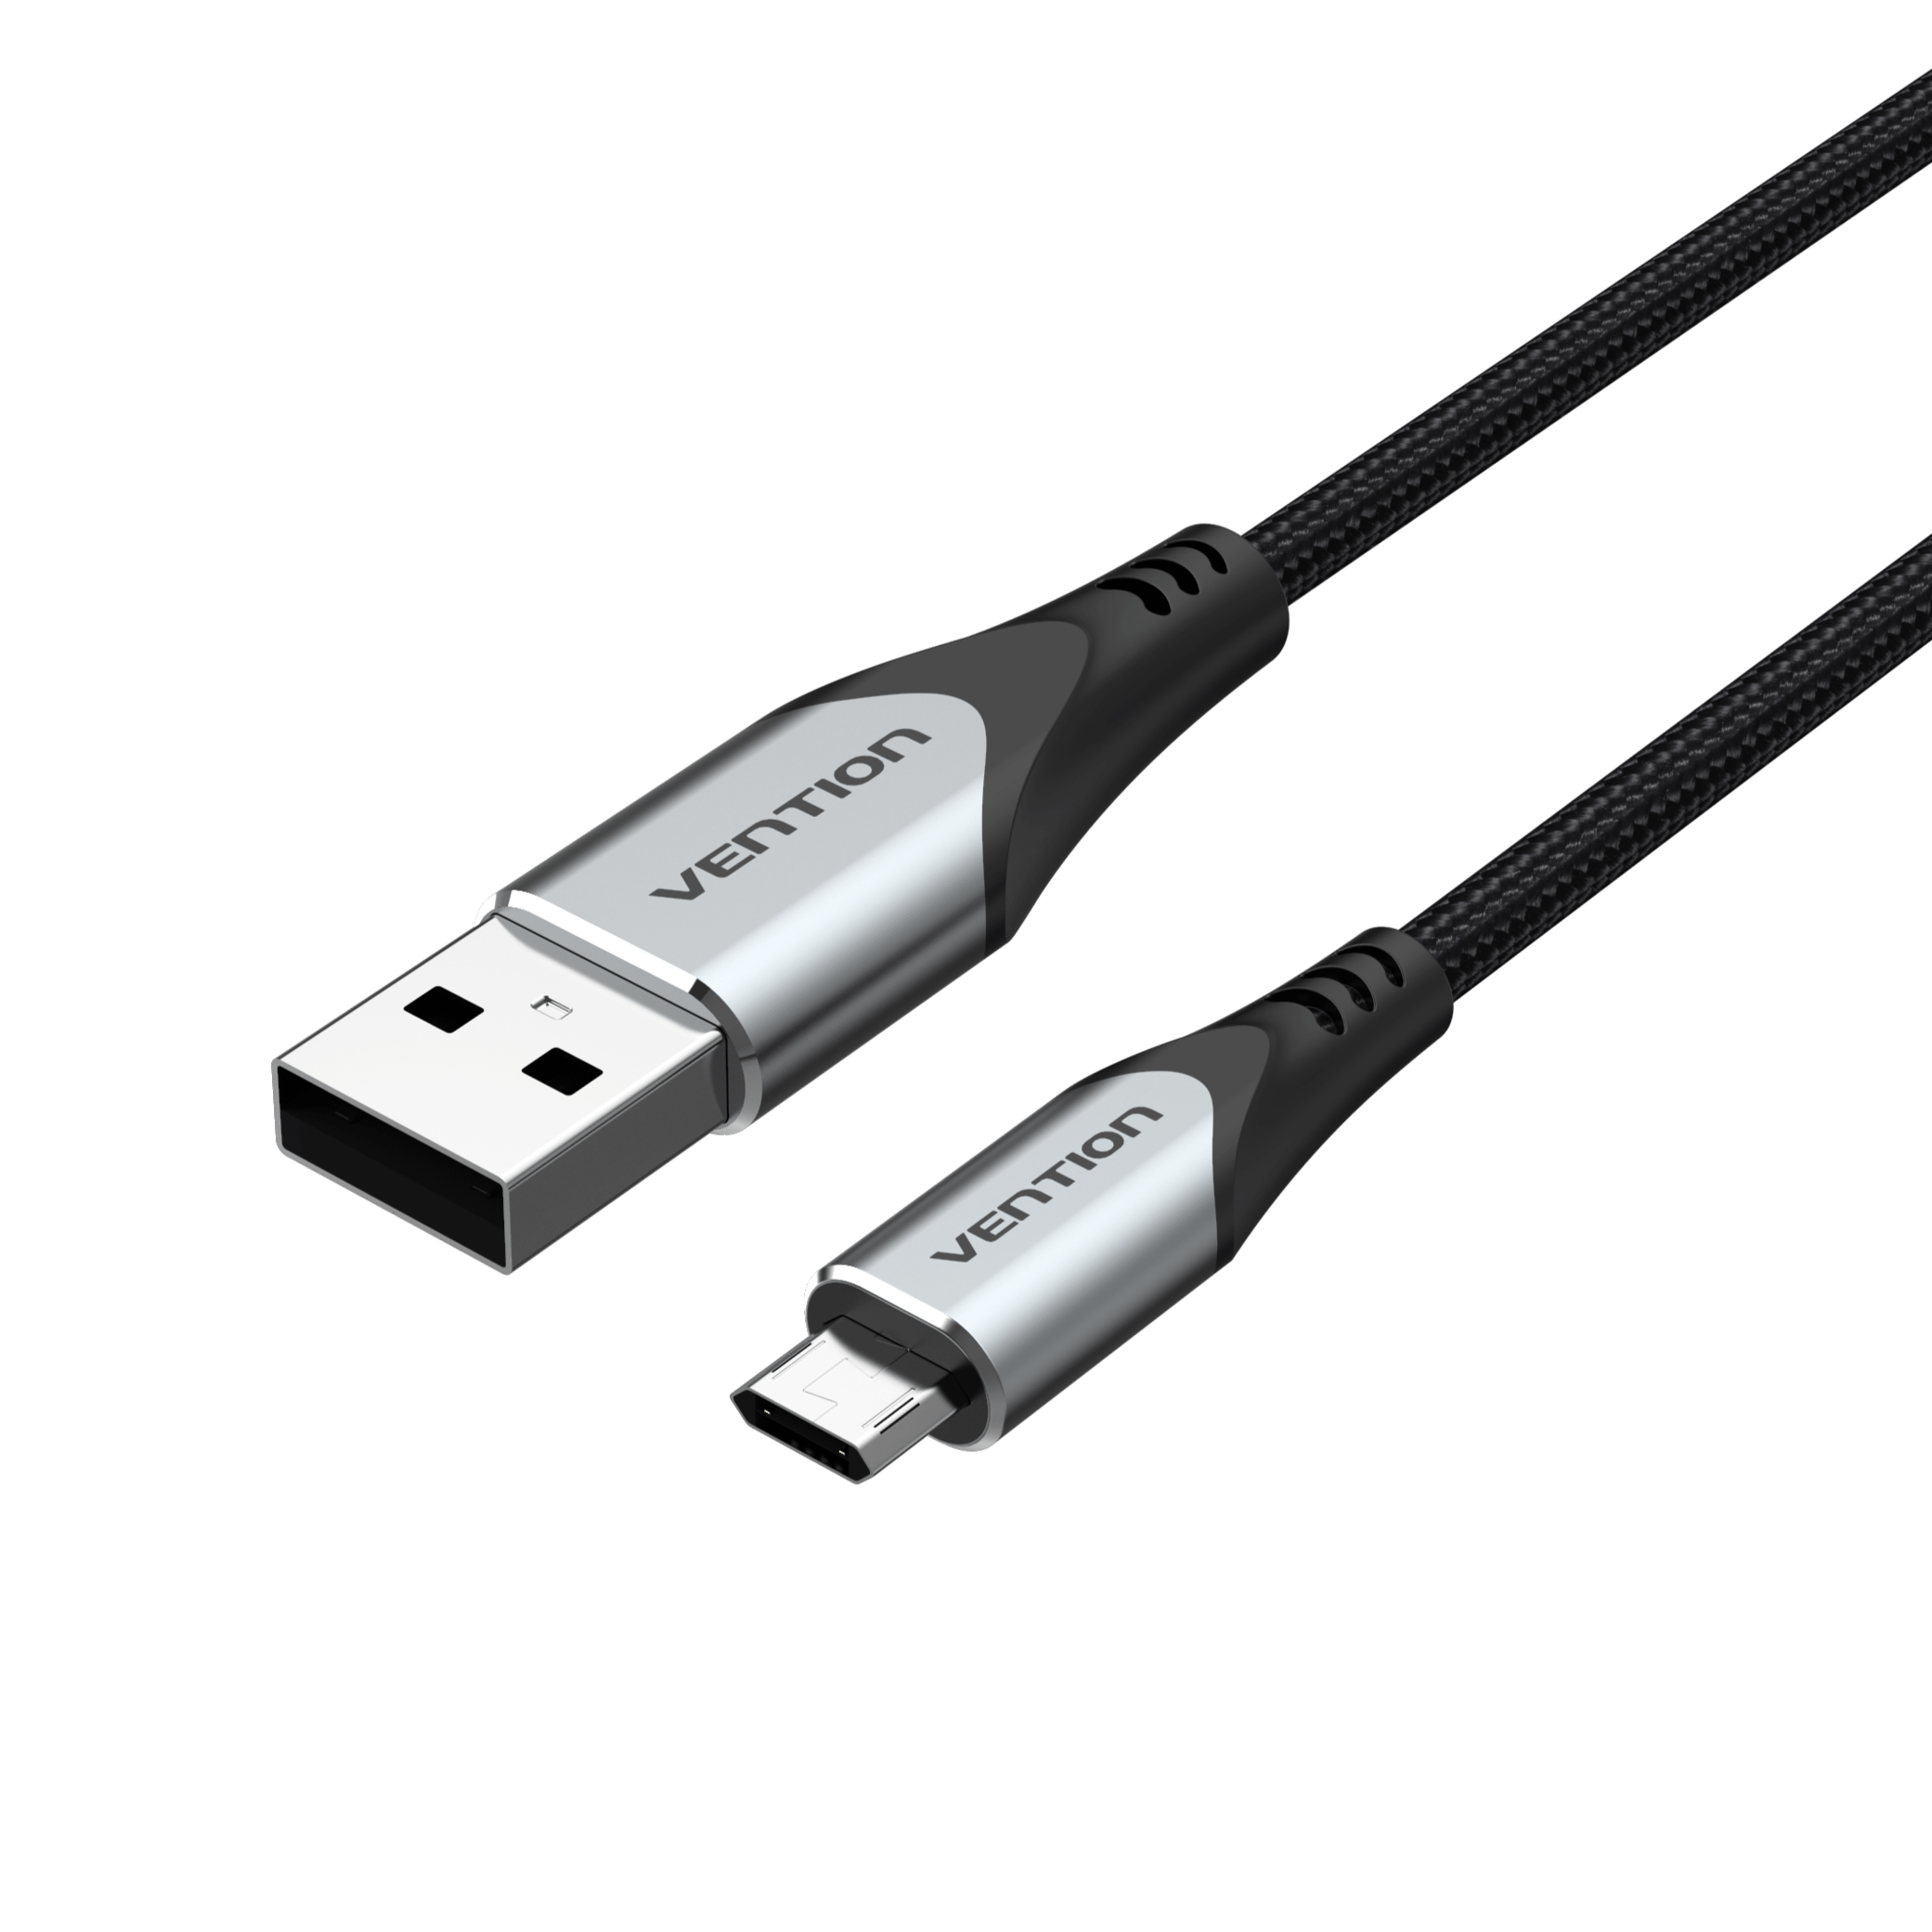 Câble Micro Usb 3M, Chargeur USB Câble, Charge Rapide Chargeur en